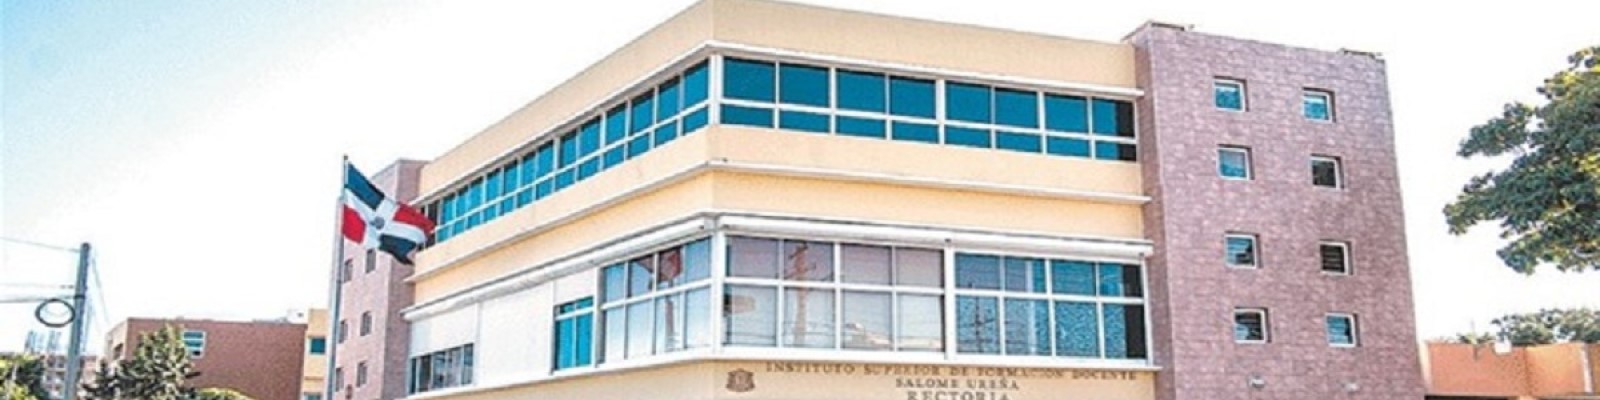 Instituto Superior de Formación Docente “Salomé Ureña” ( ISFODOSU )